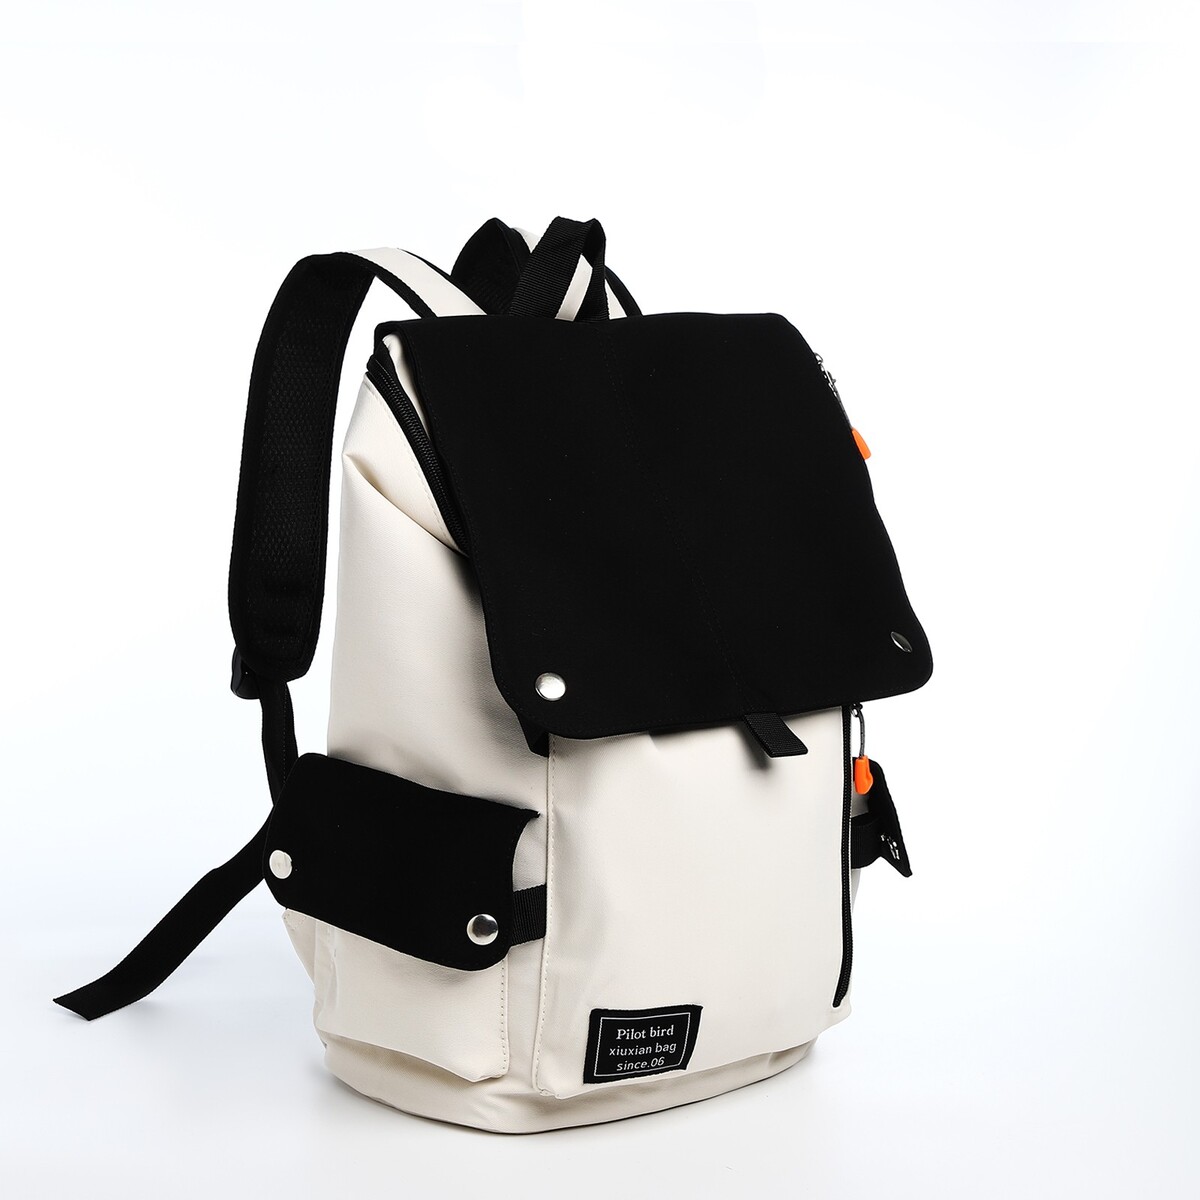 Рюкзак на молнии, 5 наружных кармана, цвет бежевый/черный рюкзак молодежный из текстиля 3 кармана белый бежевый